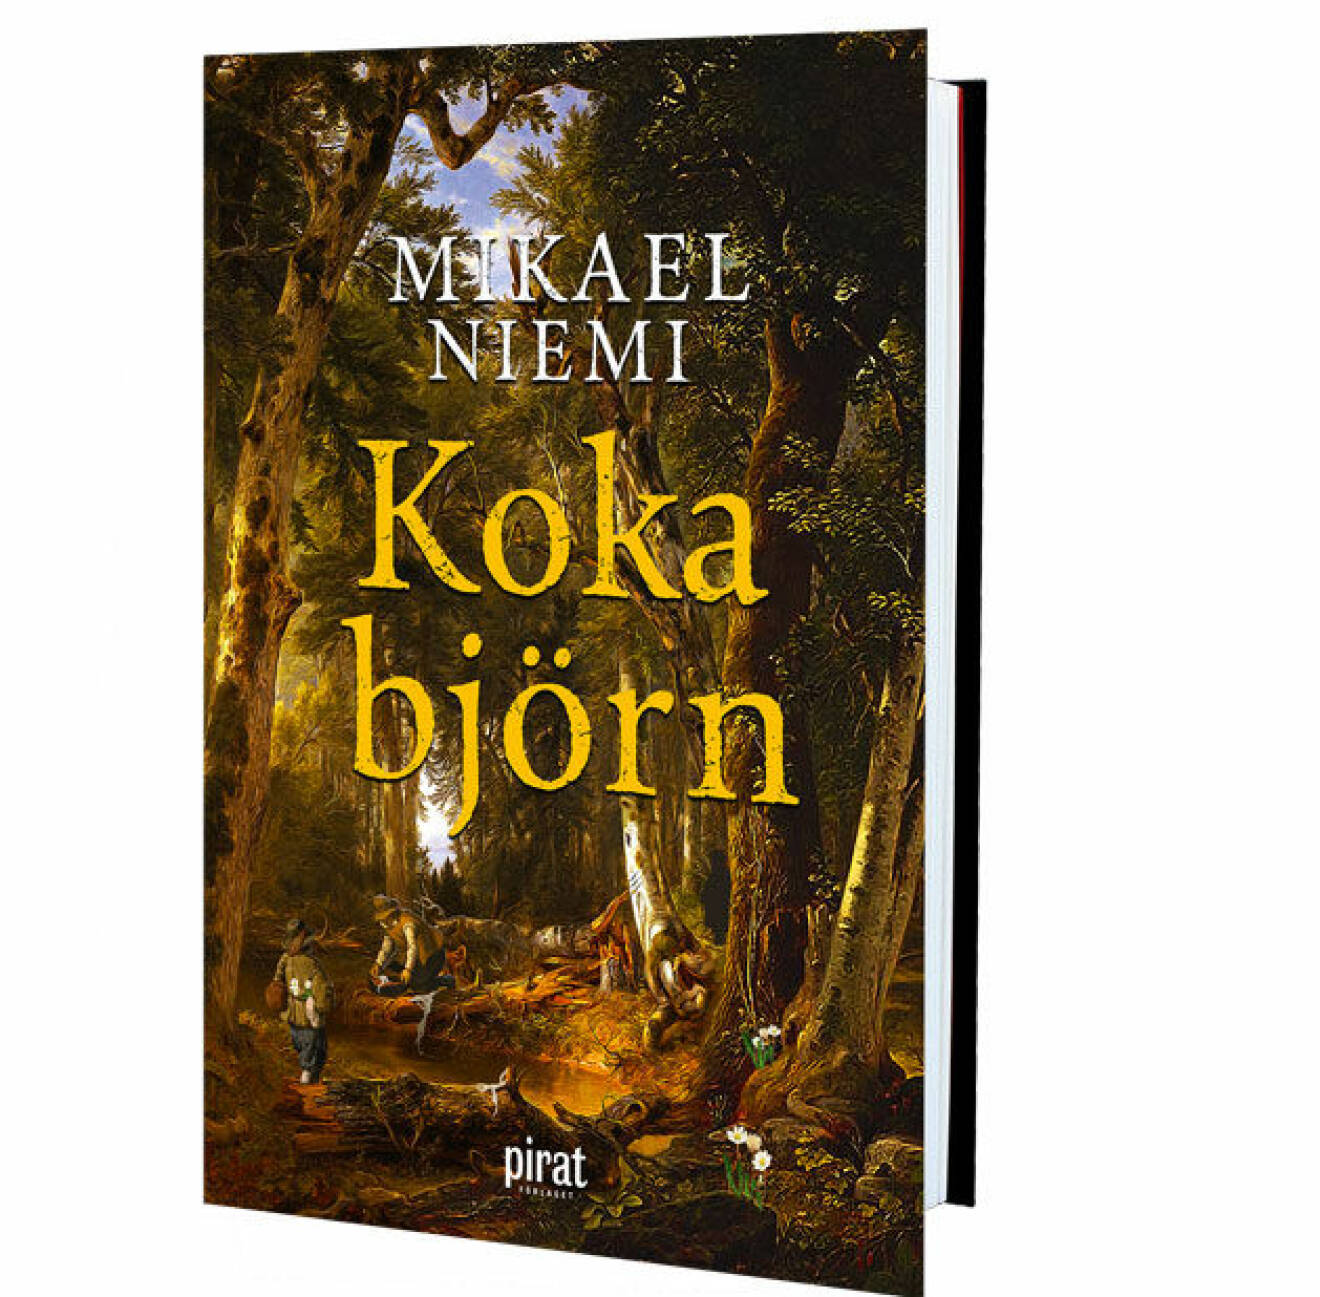  Kriminalromanen Koka Björn är en mustig historia som kom ut förra året och nu är nominerad till Årets bok.